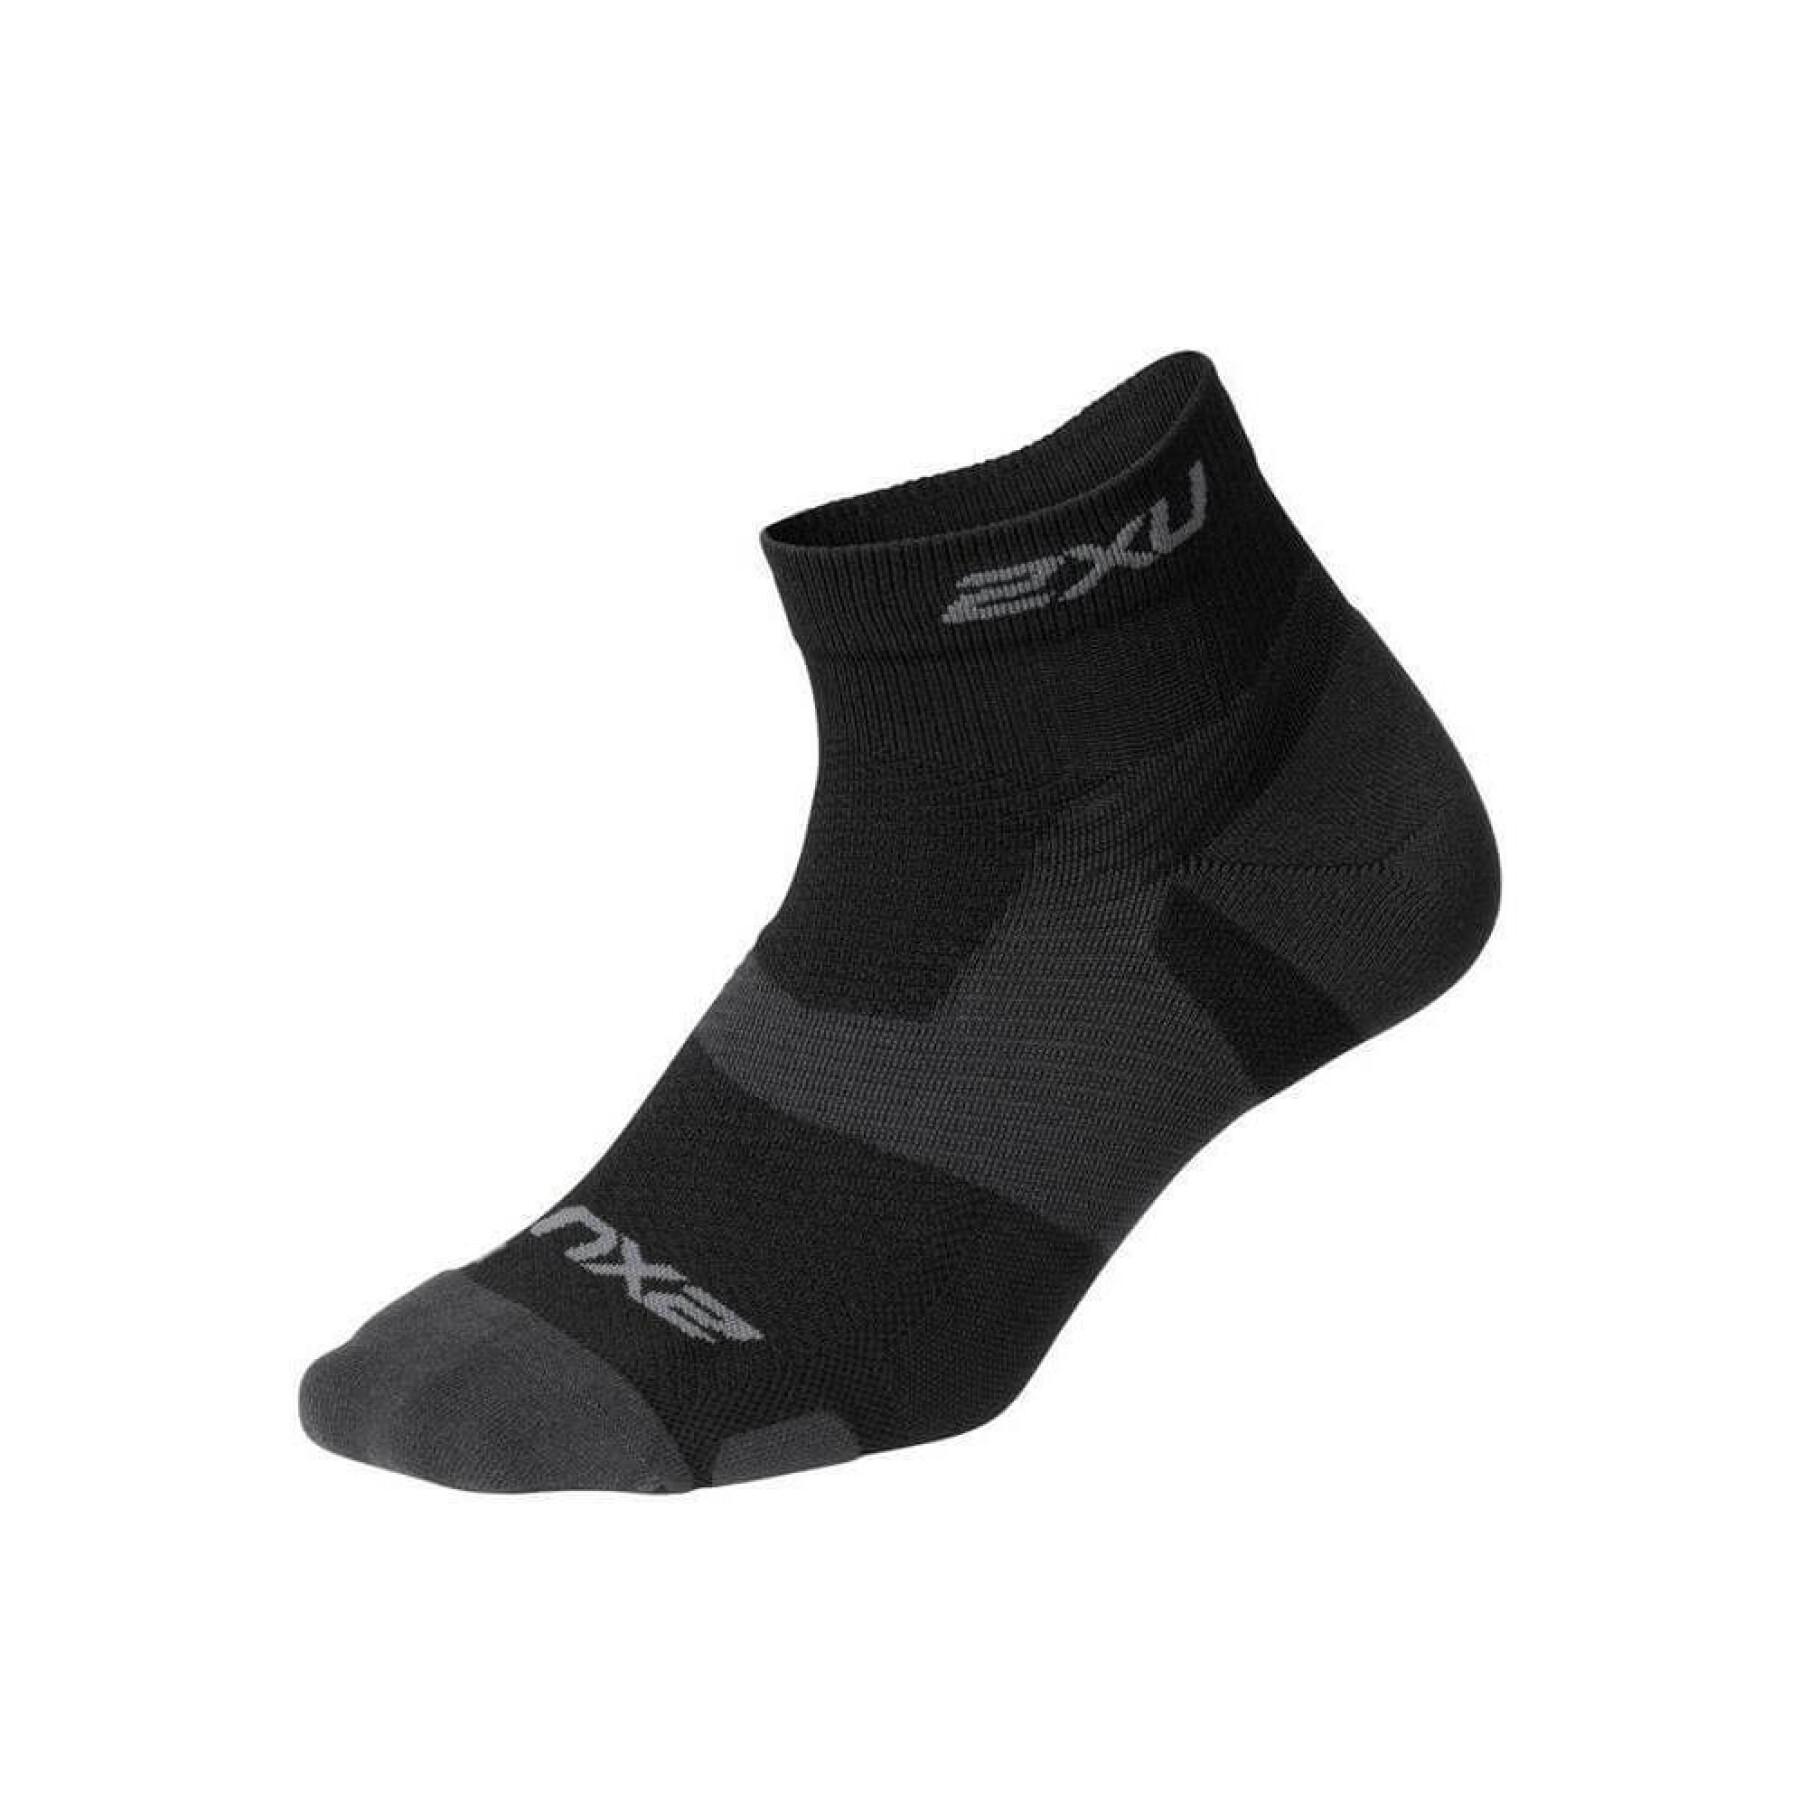 Socks 1-4 2XU Vectr Light Cush